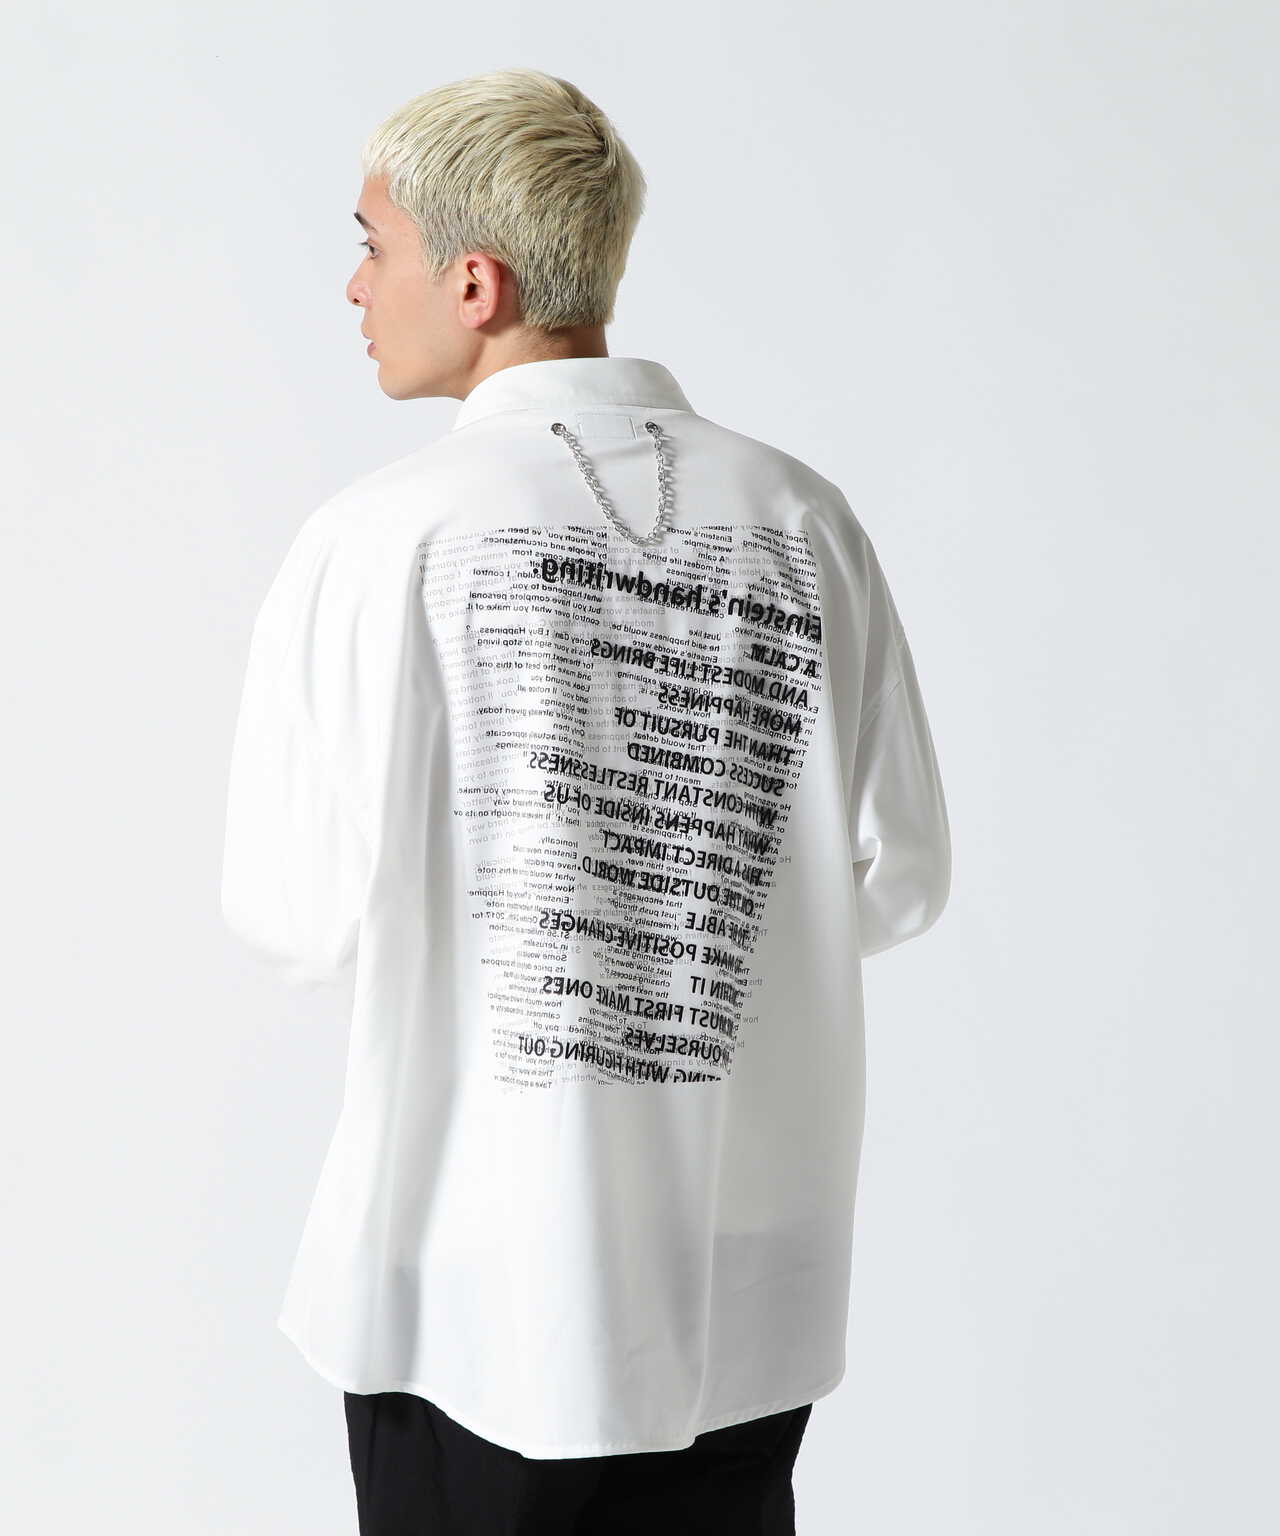 Dankeschon/ダンケシェーン/Collage Chain Shirt/コラージュチェーンシャツ